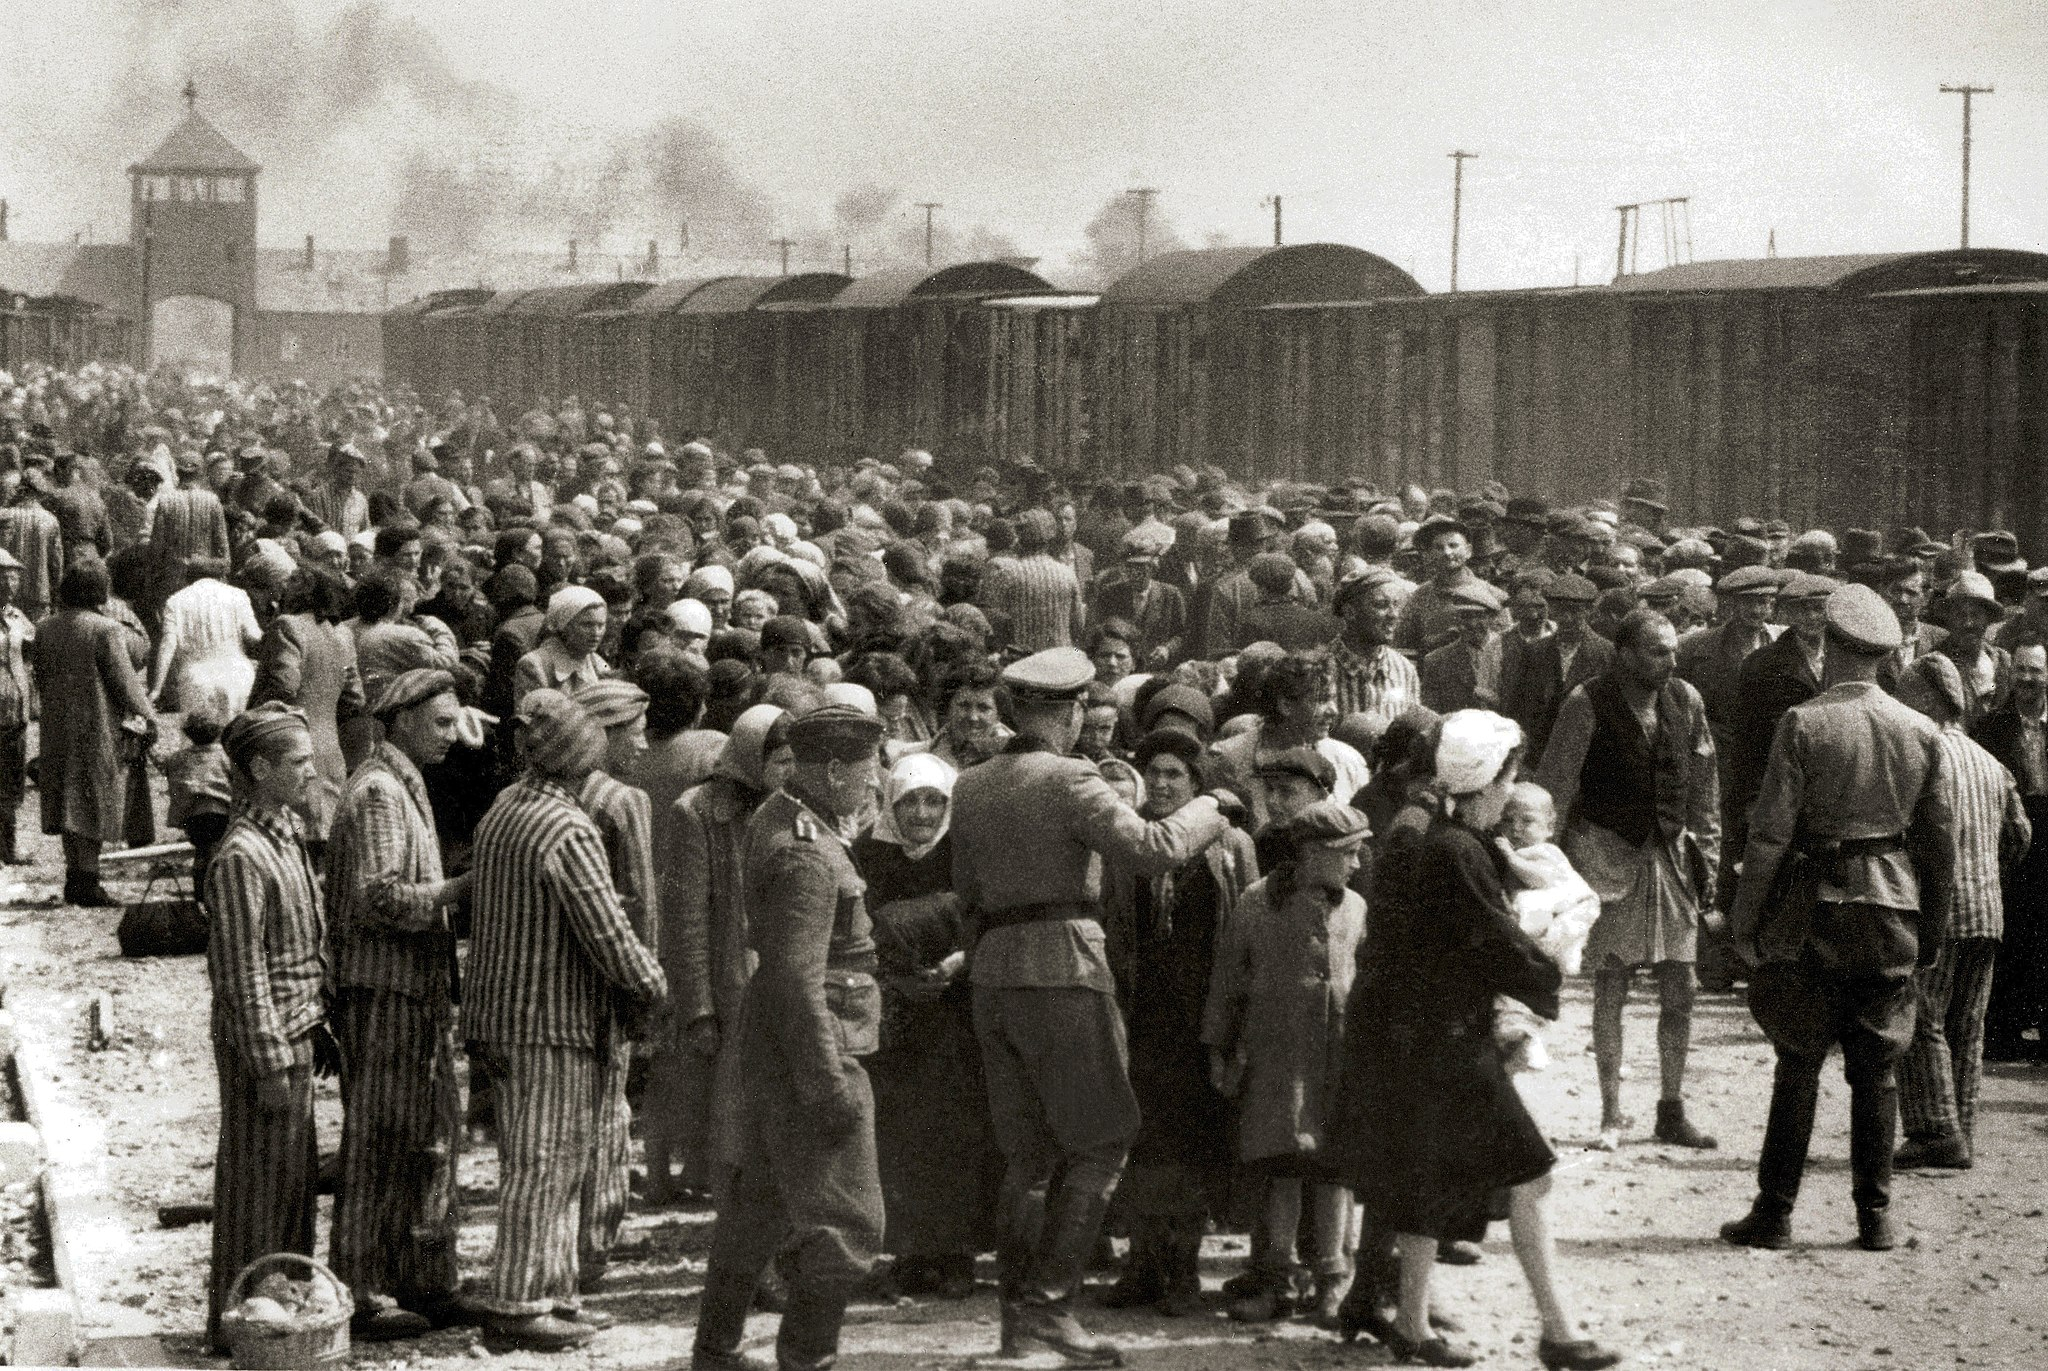 Selectie op het perron in Auschwitz, met als tweede van links Maurice Schellekens. Na het Sonderkommando komt hij terecht in het Kanada-kommando, waar hij de bagage van de gedeporteerden moet afnemen.